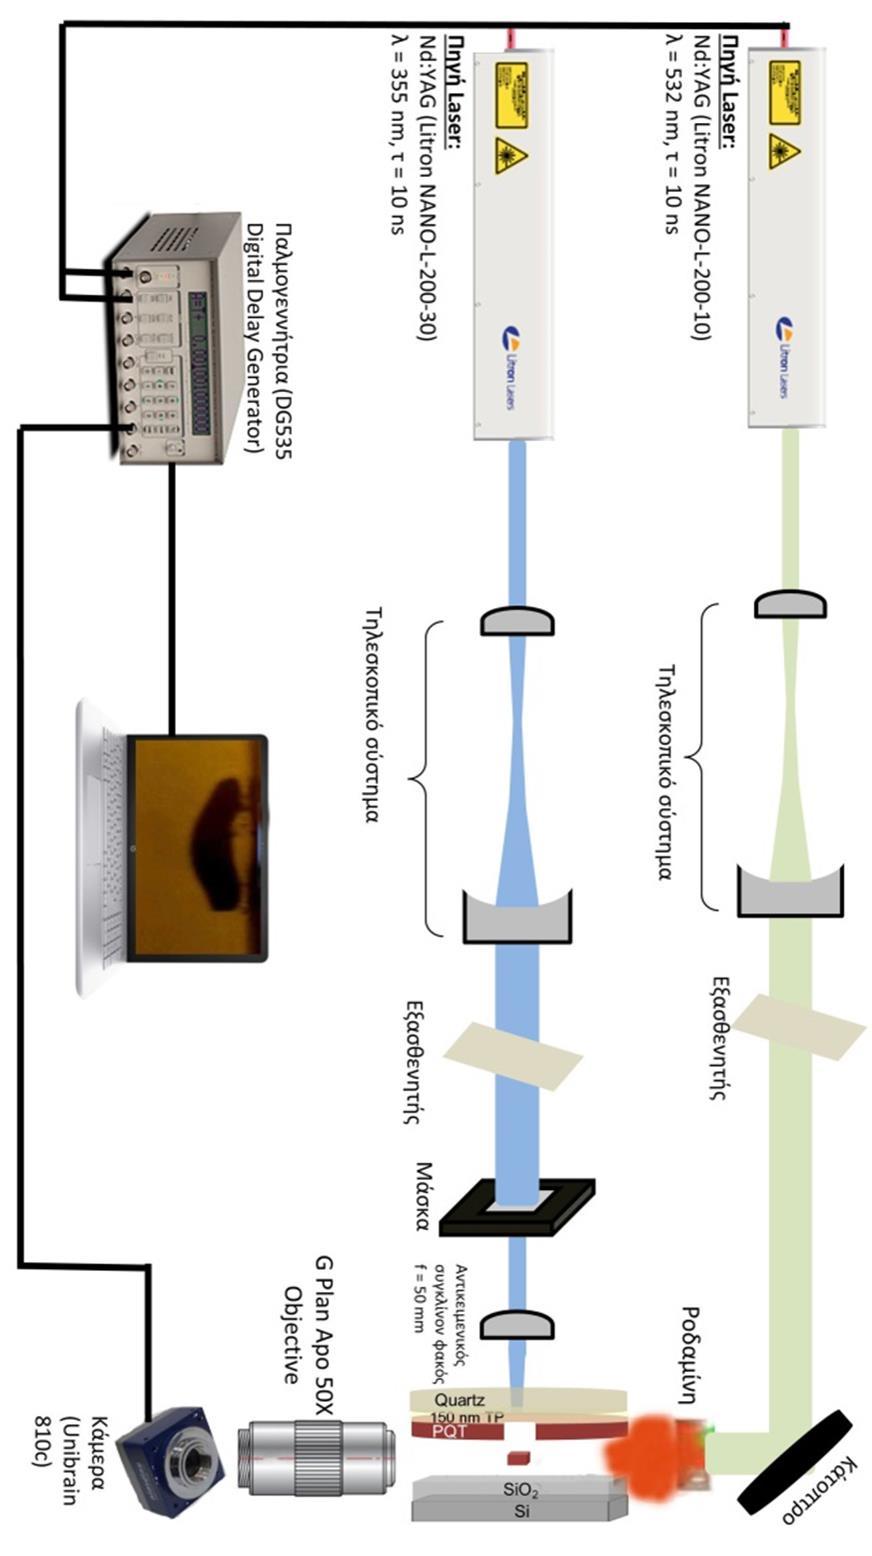 Διάγραμμα 4.3: Διάταξη χρονοεξαρτώμενης πλάγιας απεικόνισης (Εργαστήριο Laser του τομέα φυσικής ΕΜΠ) για την καταγραφή του μηχανισμού εκτύπωσης με laser υλικών σε στερεά φάση.